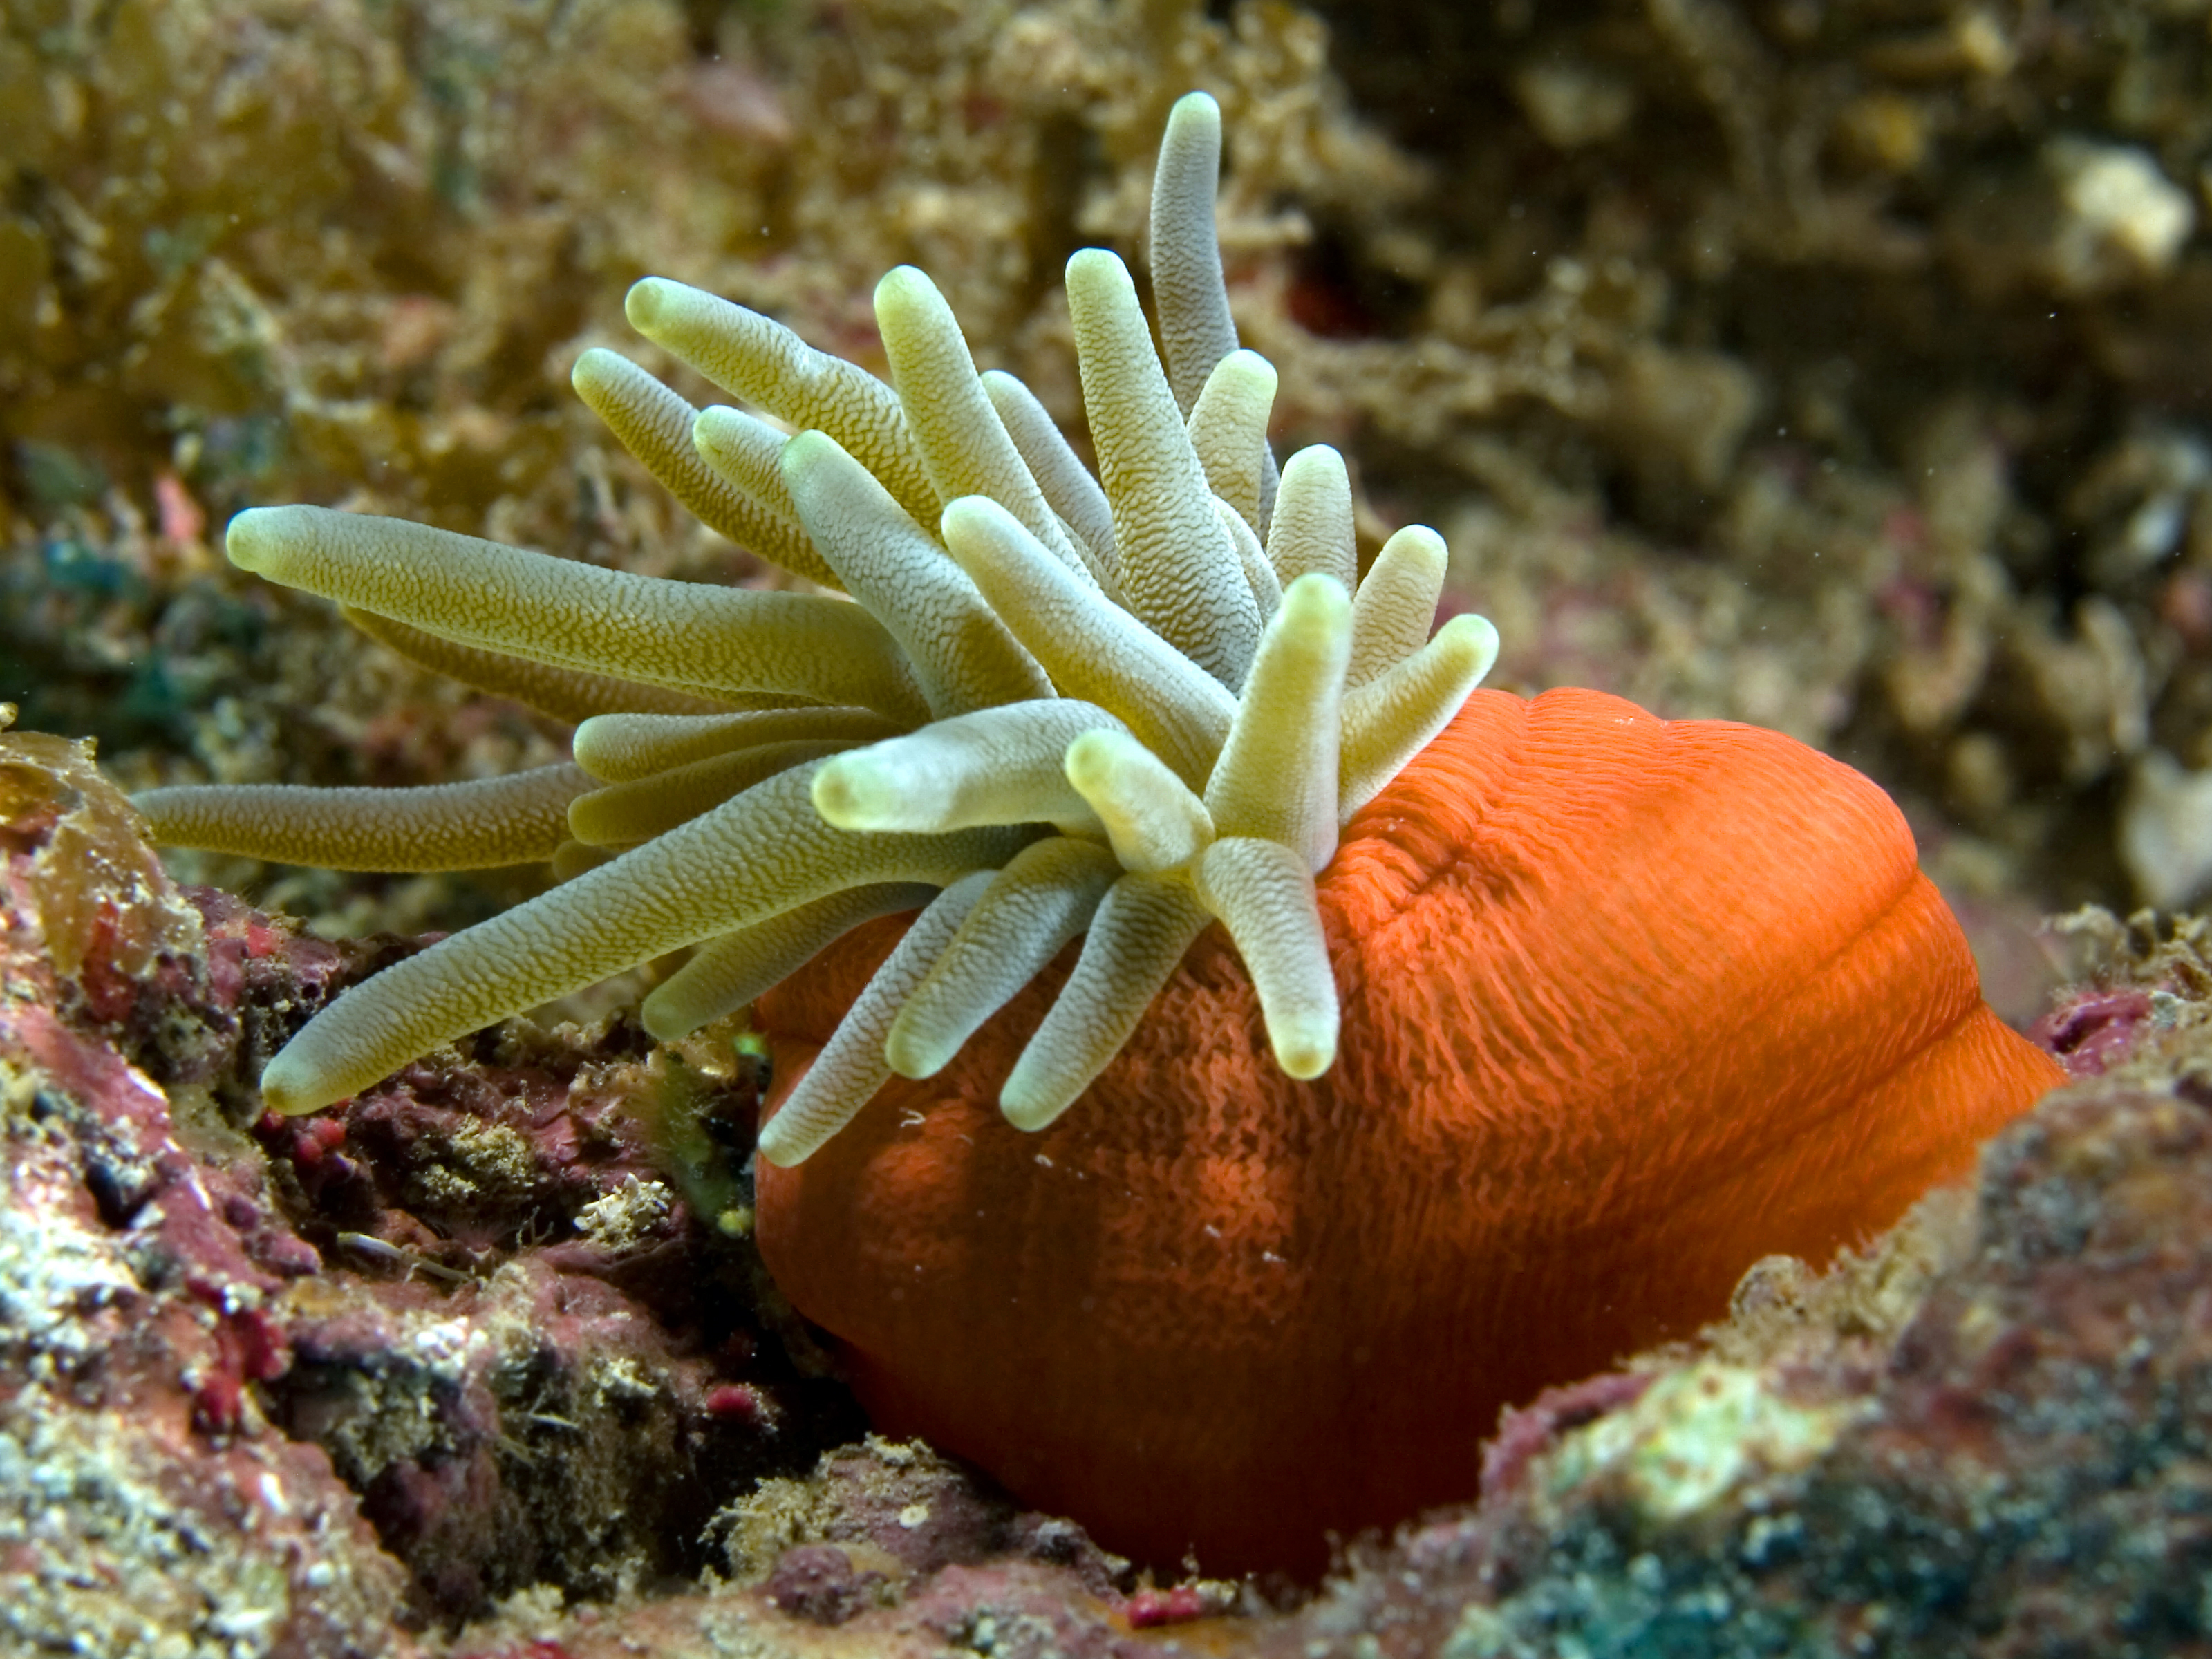 Polype : hydres, corail et méduse